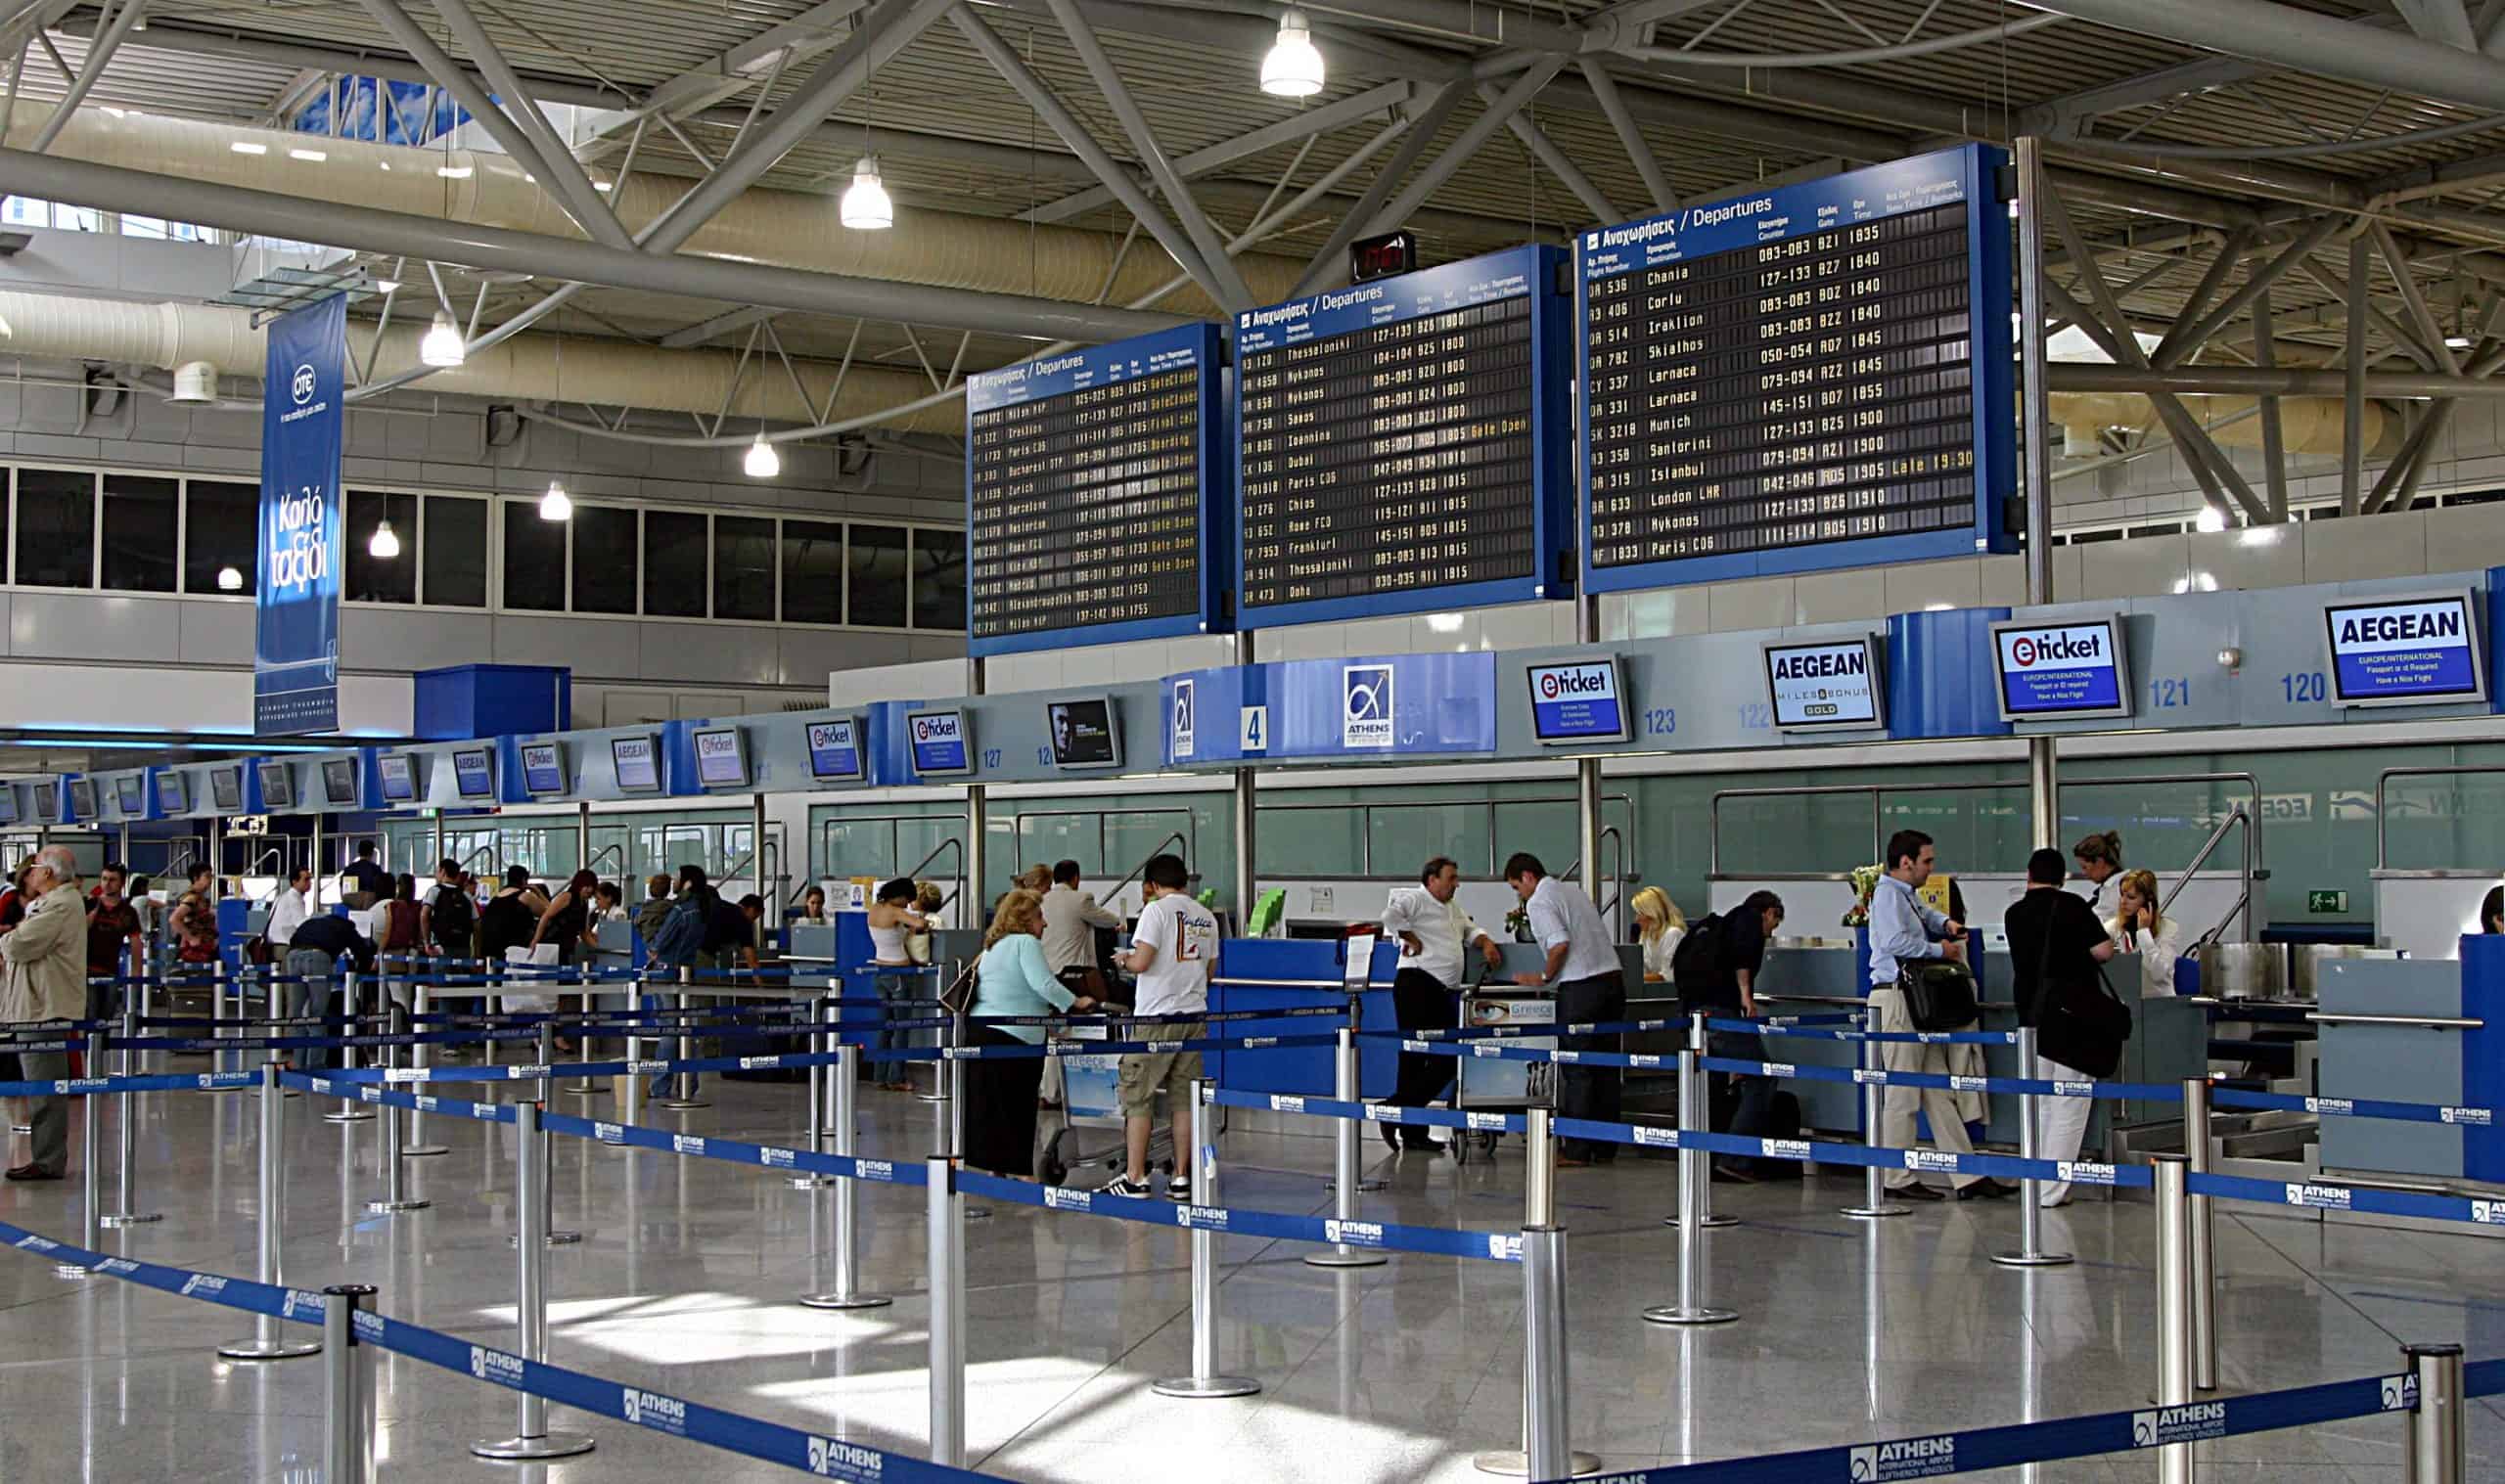 Sân bay quốc tế Eleftherios Venizelos (Athens), Hy Lạp - Vé máy bay đi Hy Lạp 